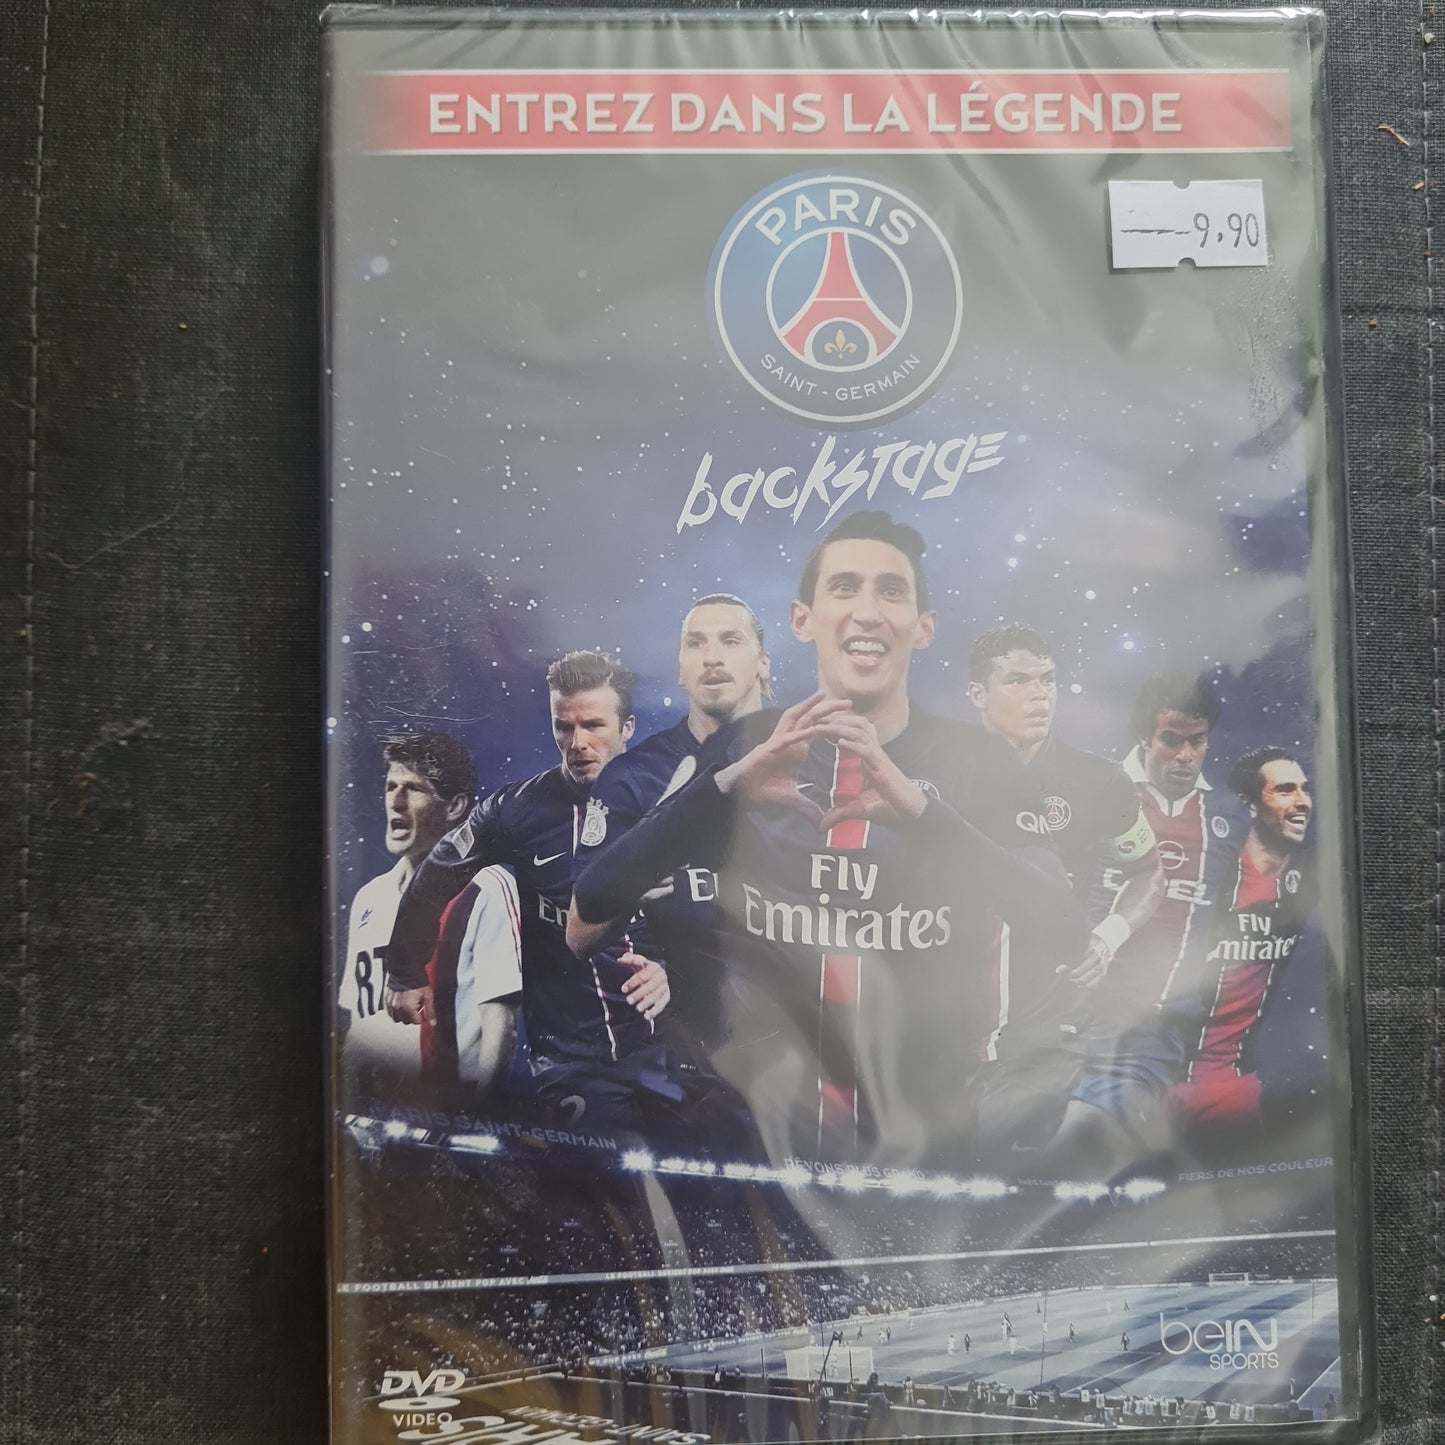 Dvd neuf Paris Saint Germain backstage , Entrez dans la légende